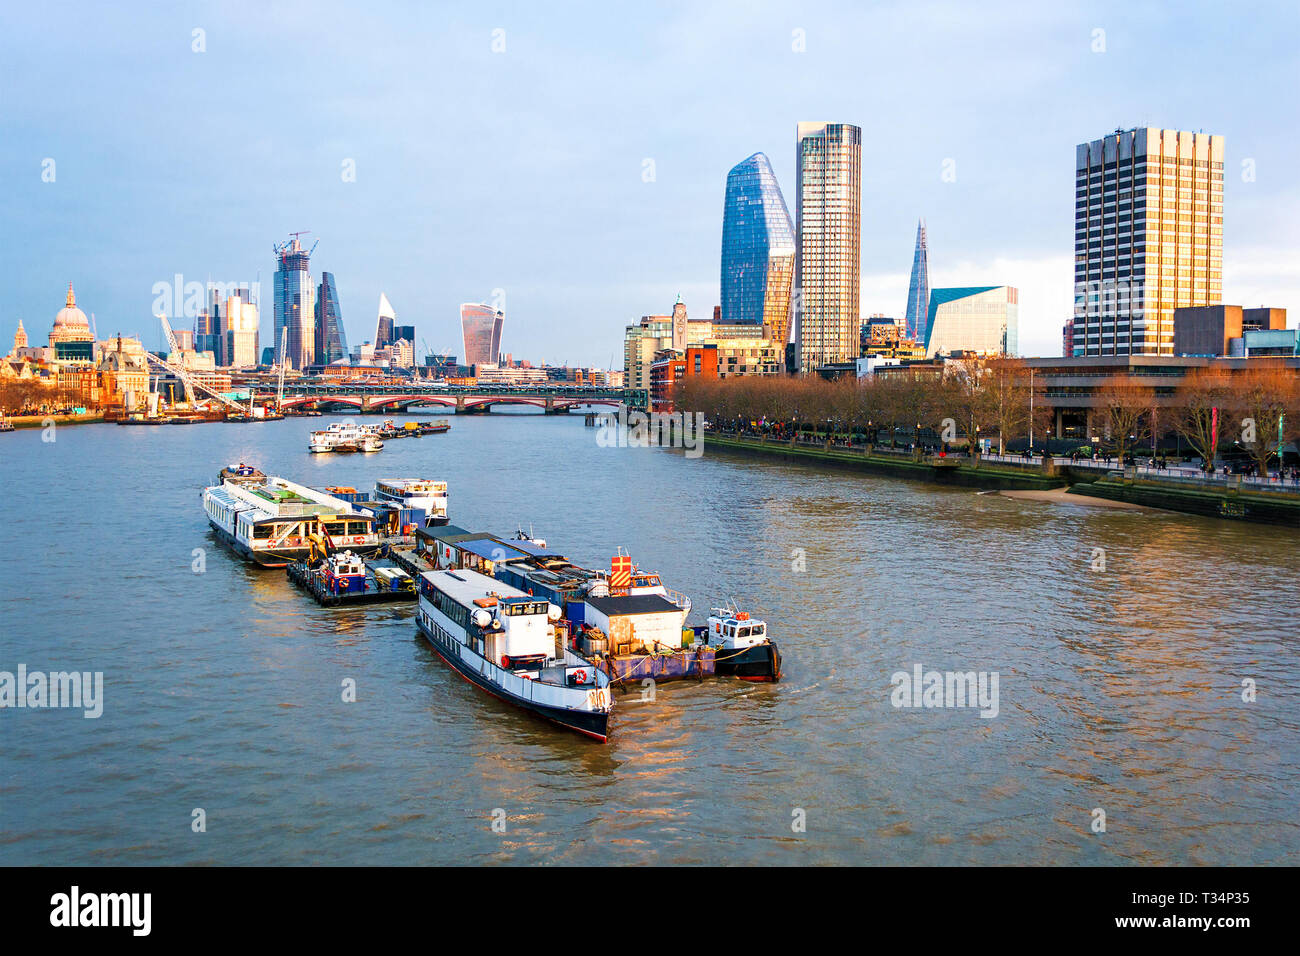 Cityscape et bateaux sur la Tamise au crépuscule, Londres, Angleterre, Royaume-Uni Banque D'Images